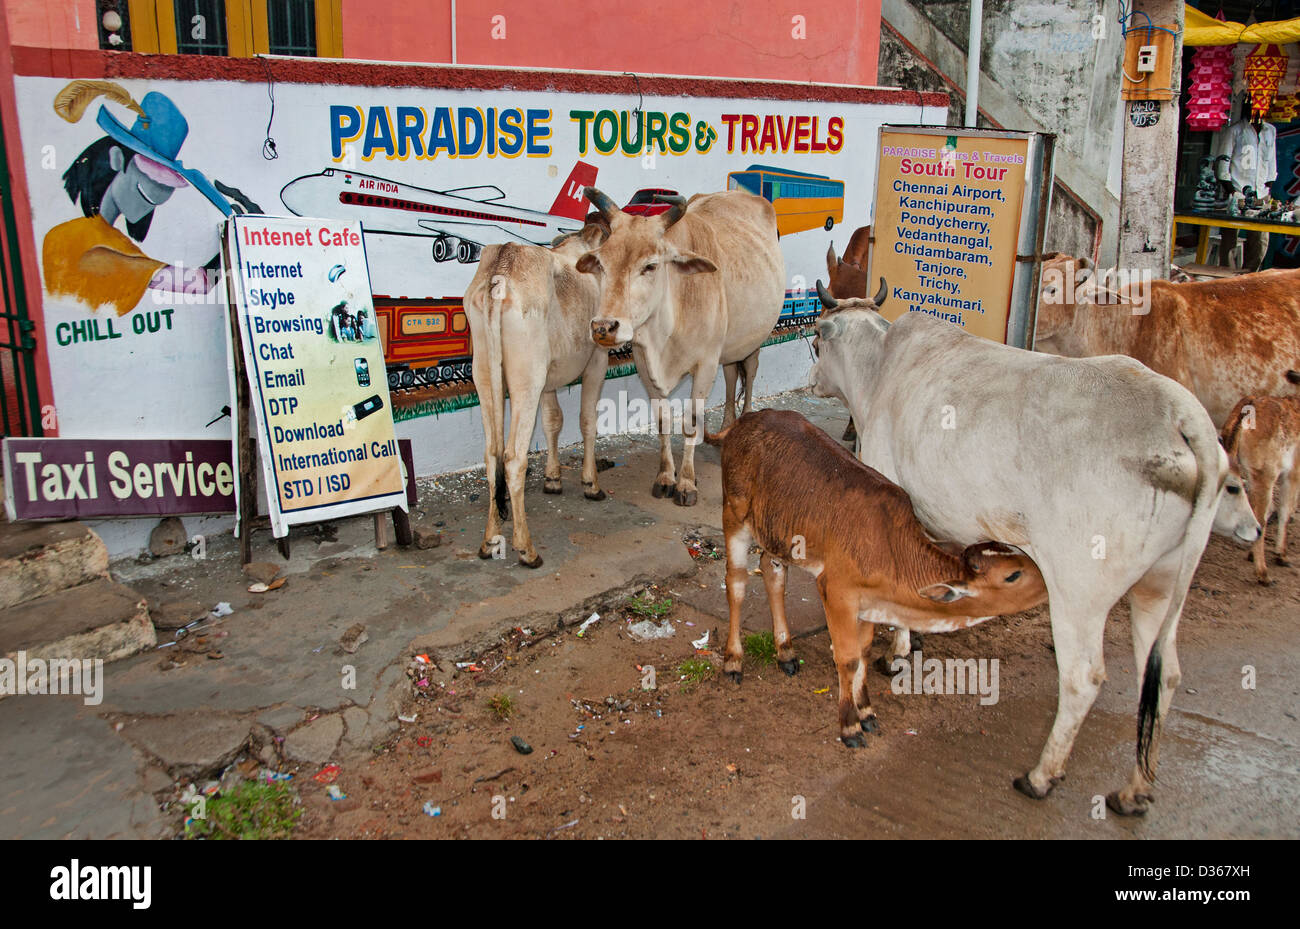 Des vaches sacrées agence de voyage Voyages Paradise Tours Covelong ( Cobelon ) ou de Kovalam Inde Tamil Nadu Banque D'Images